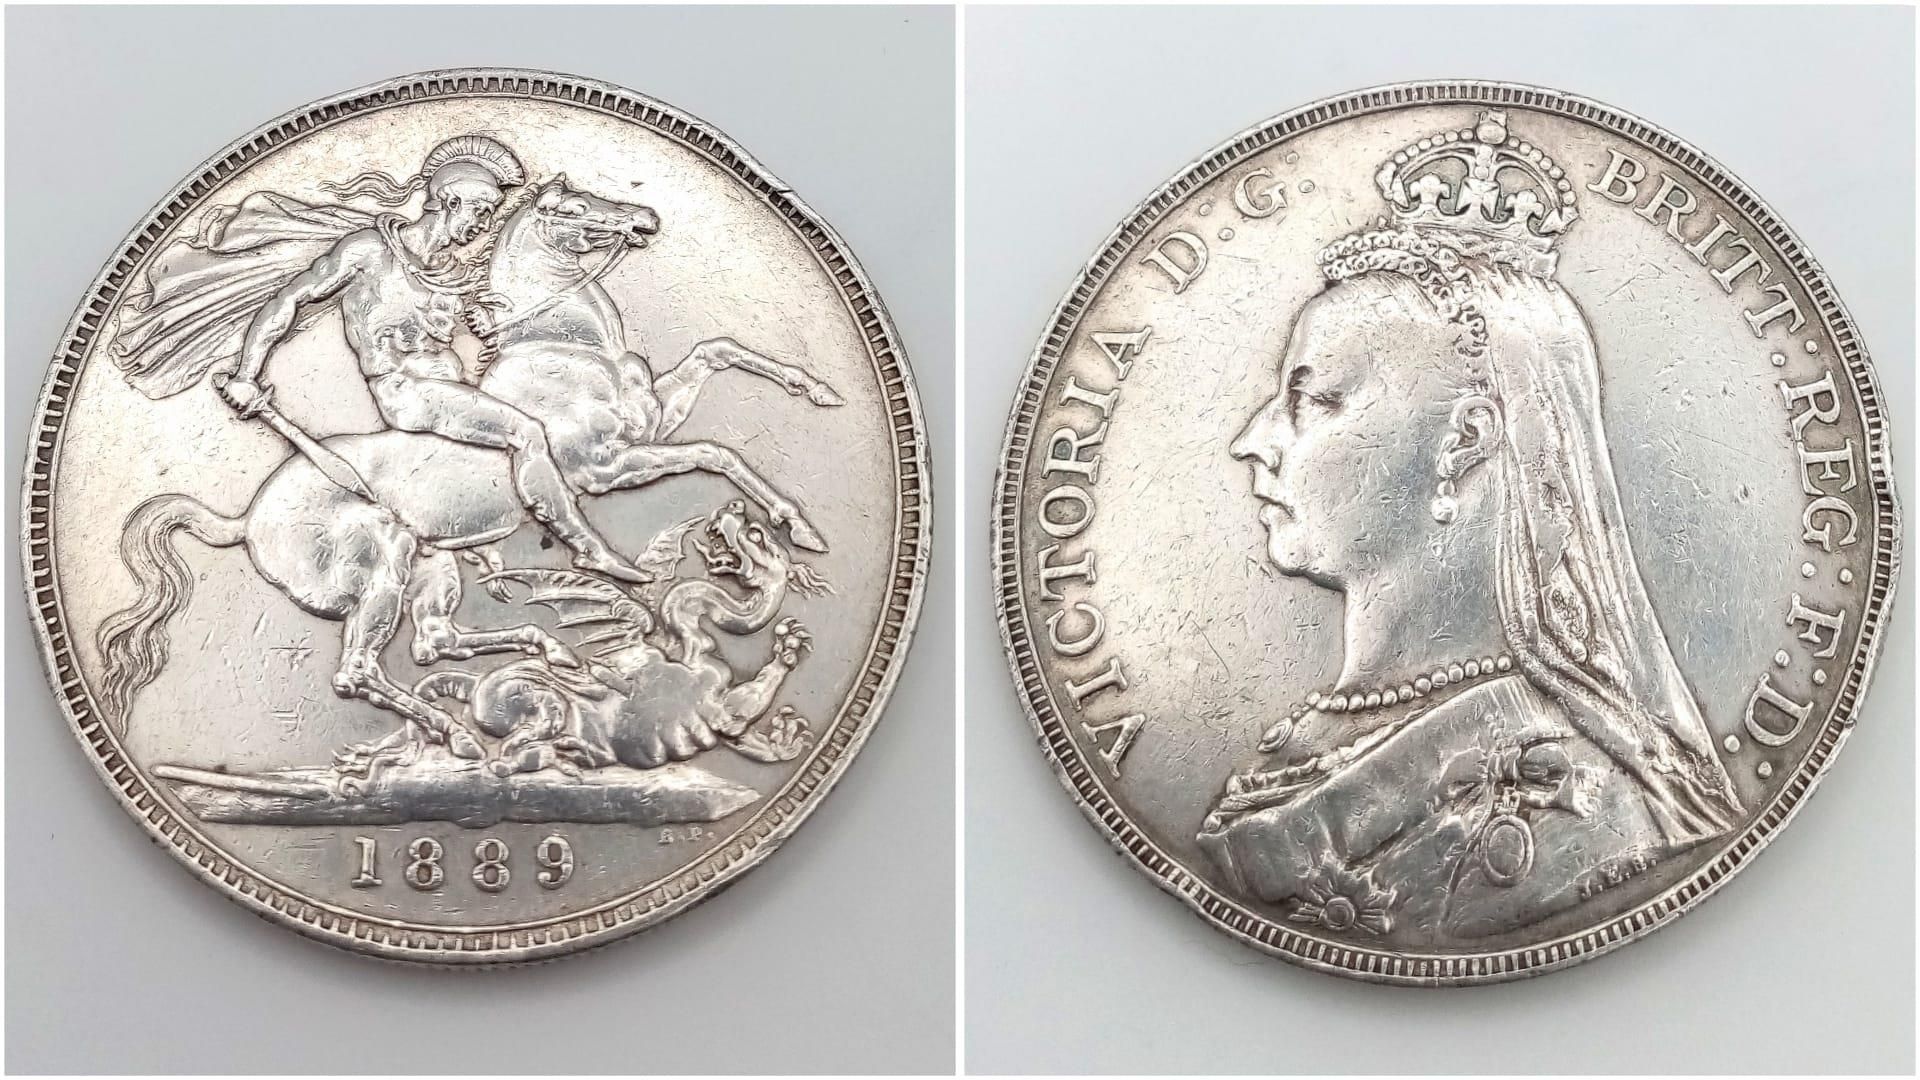 An 1889 Queen Victoria Silver Crown Coin. VF grade but please see photos.